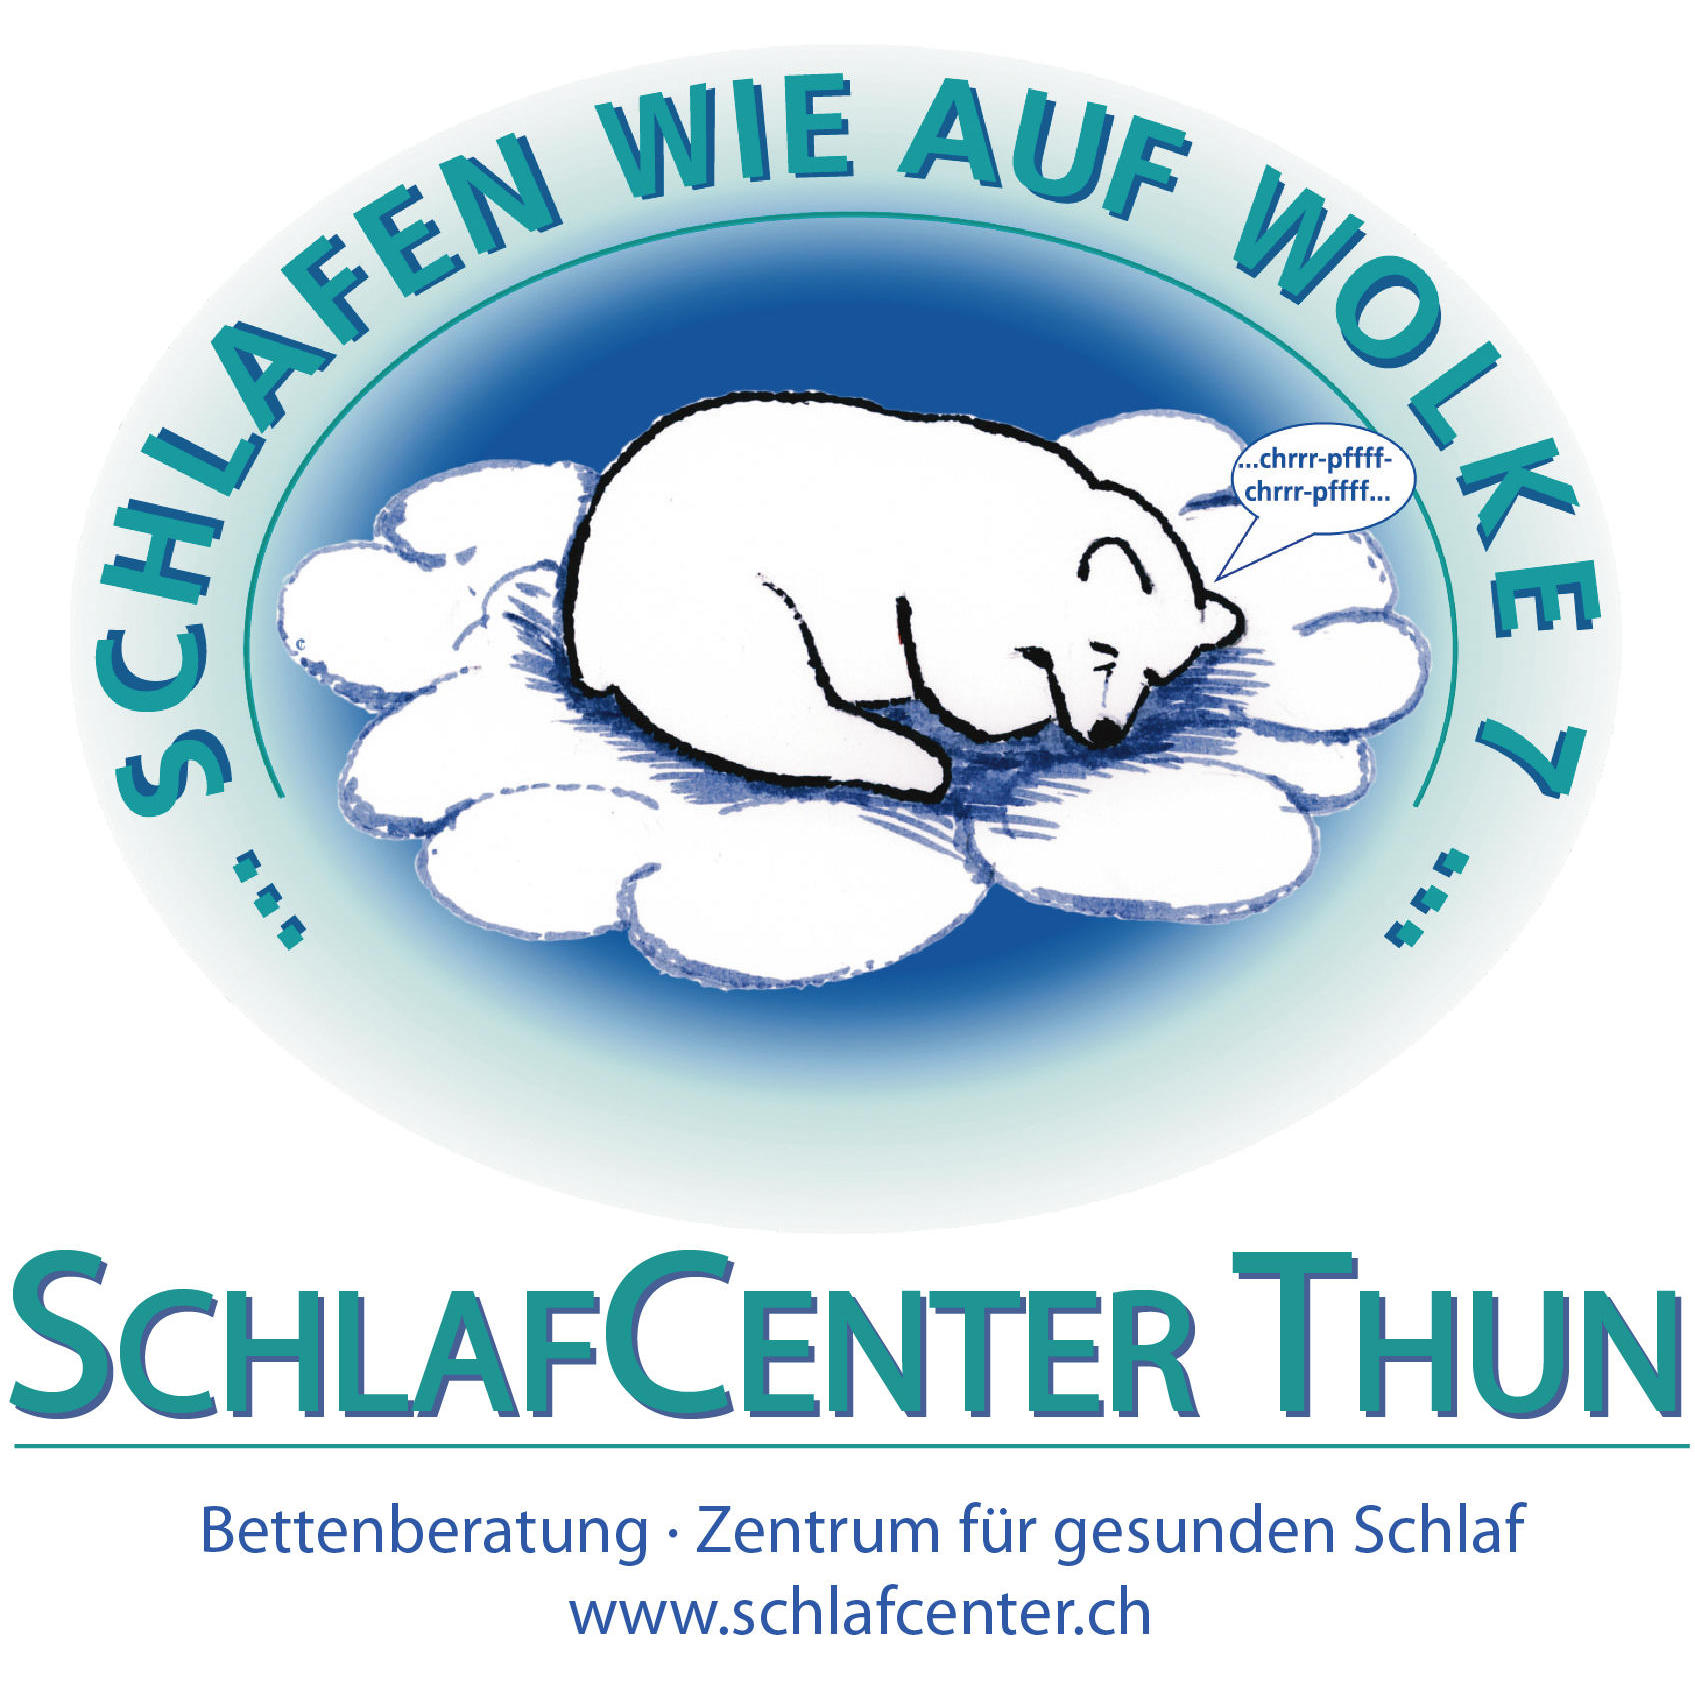 SchlafCenter Thun - Zentrum für gesunden Schlaf Logo